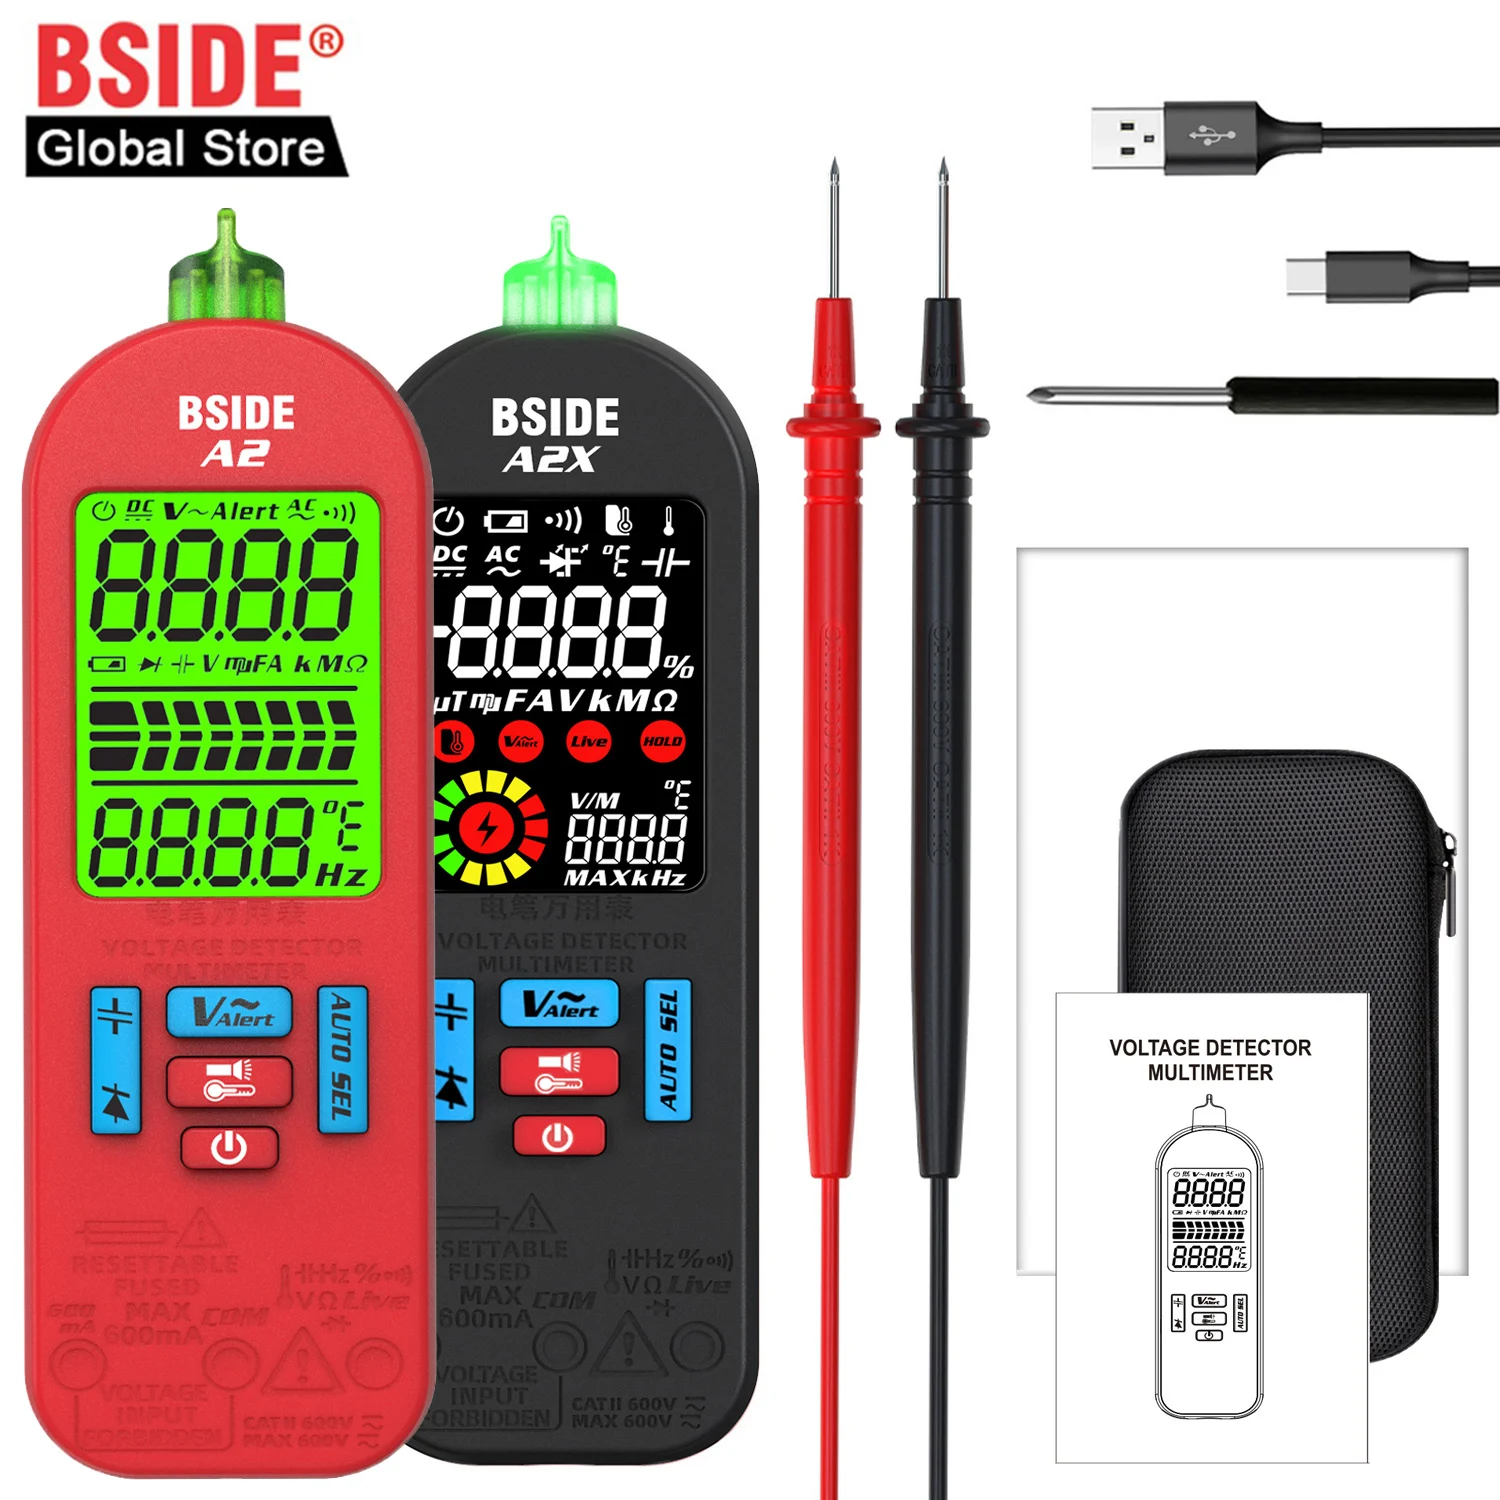 

Цифровой USB-тестер BSIDE, Бесконтактный смарт-мультиметр в виде ручки с точкой прерывания переменного тока, электронный инструмент для проверки бесконтактного напряжения